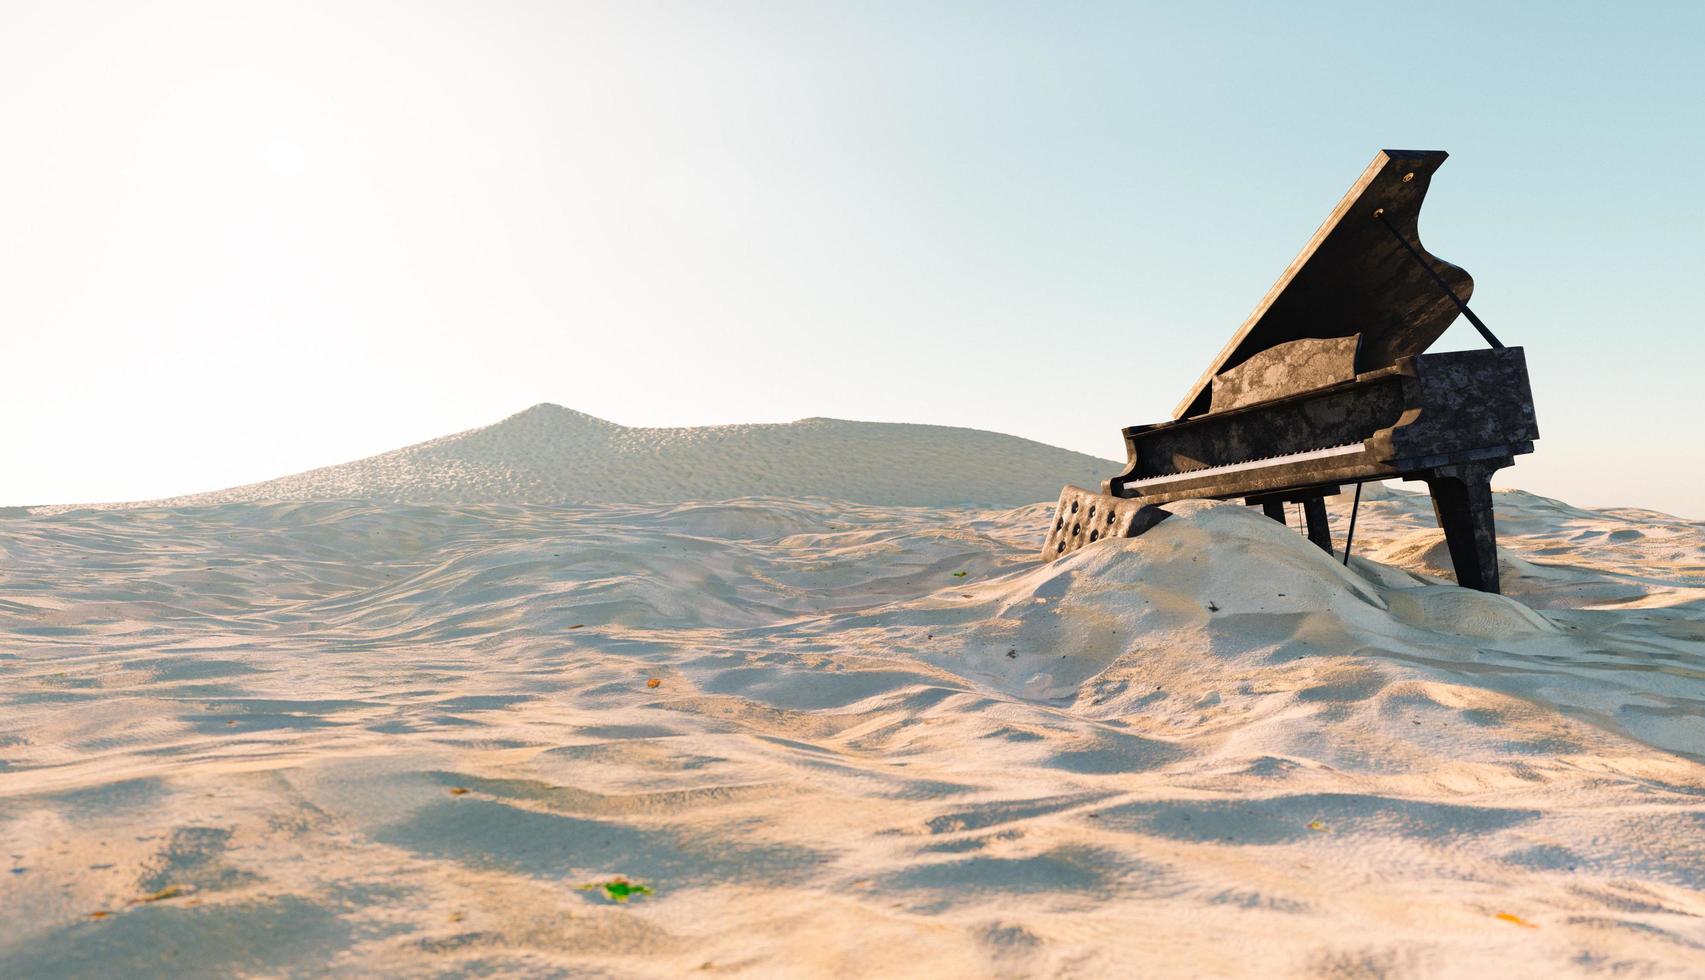 Piano abandonné et endommagé sur la plage avec du sable qui le recouvre, illustration 3d photo